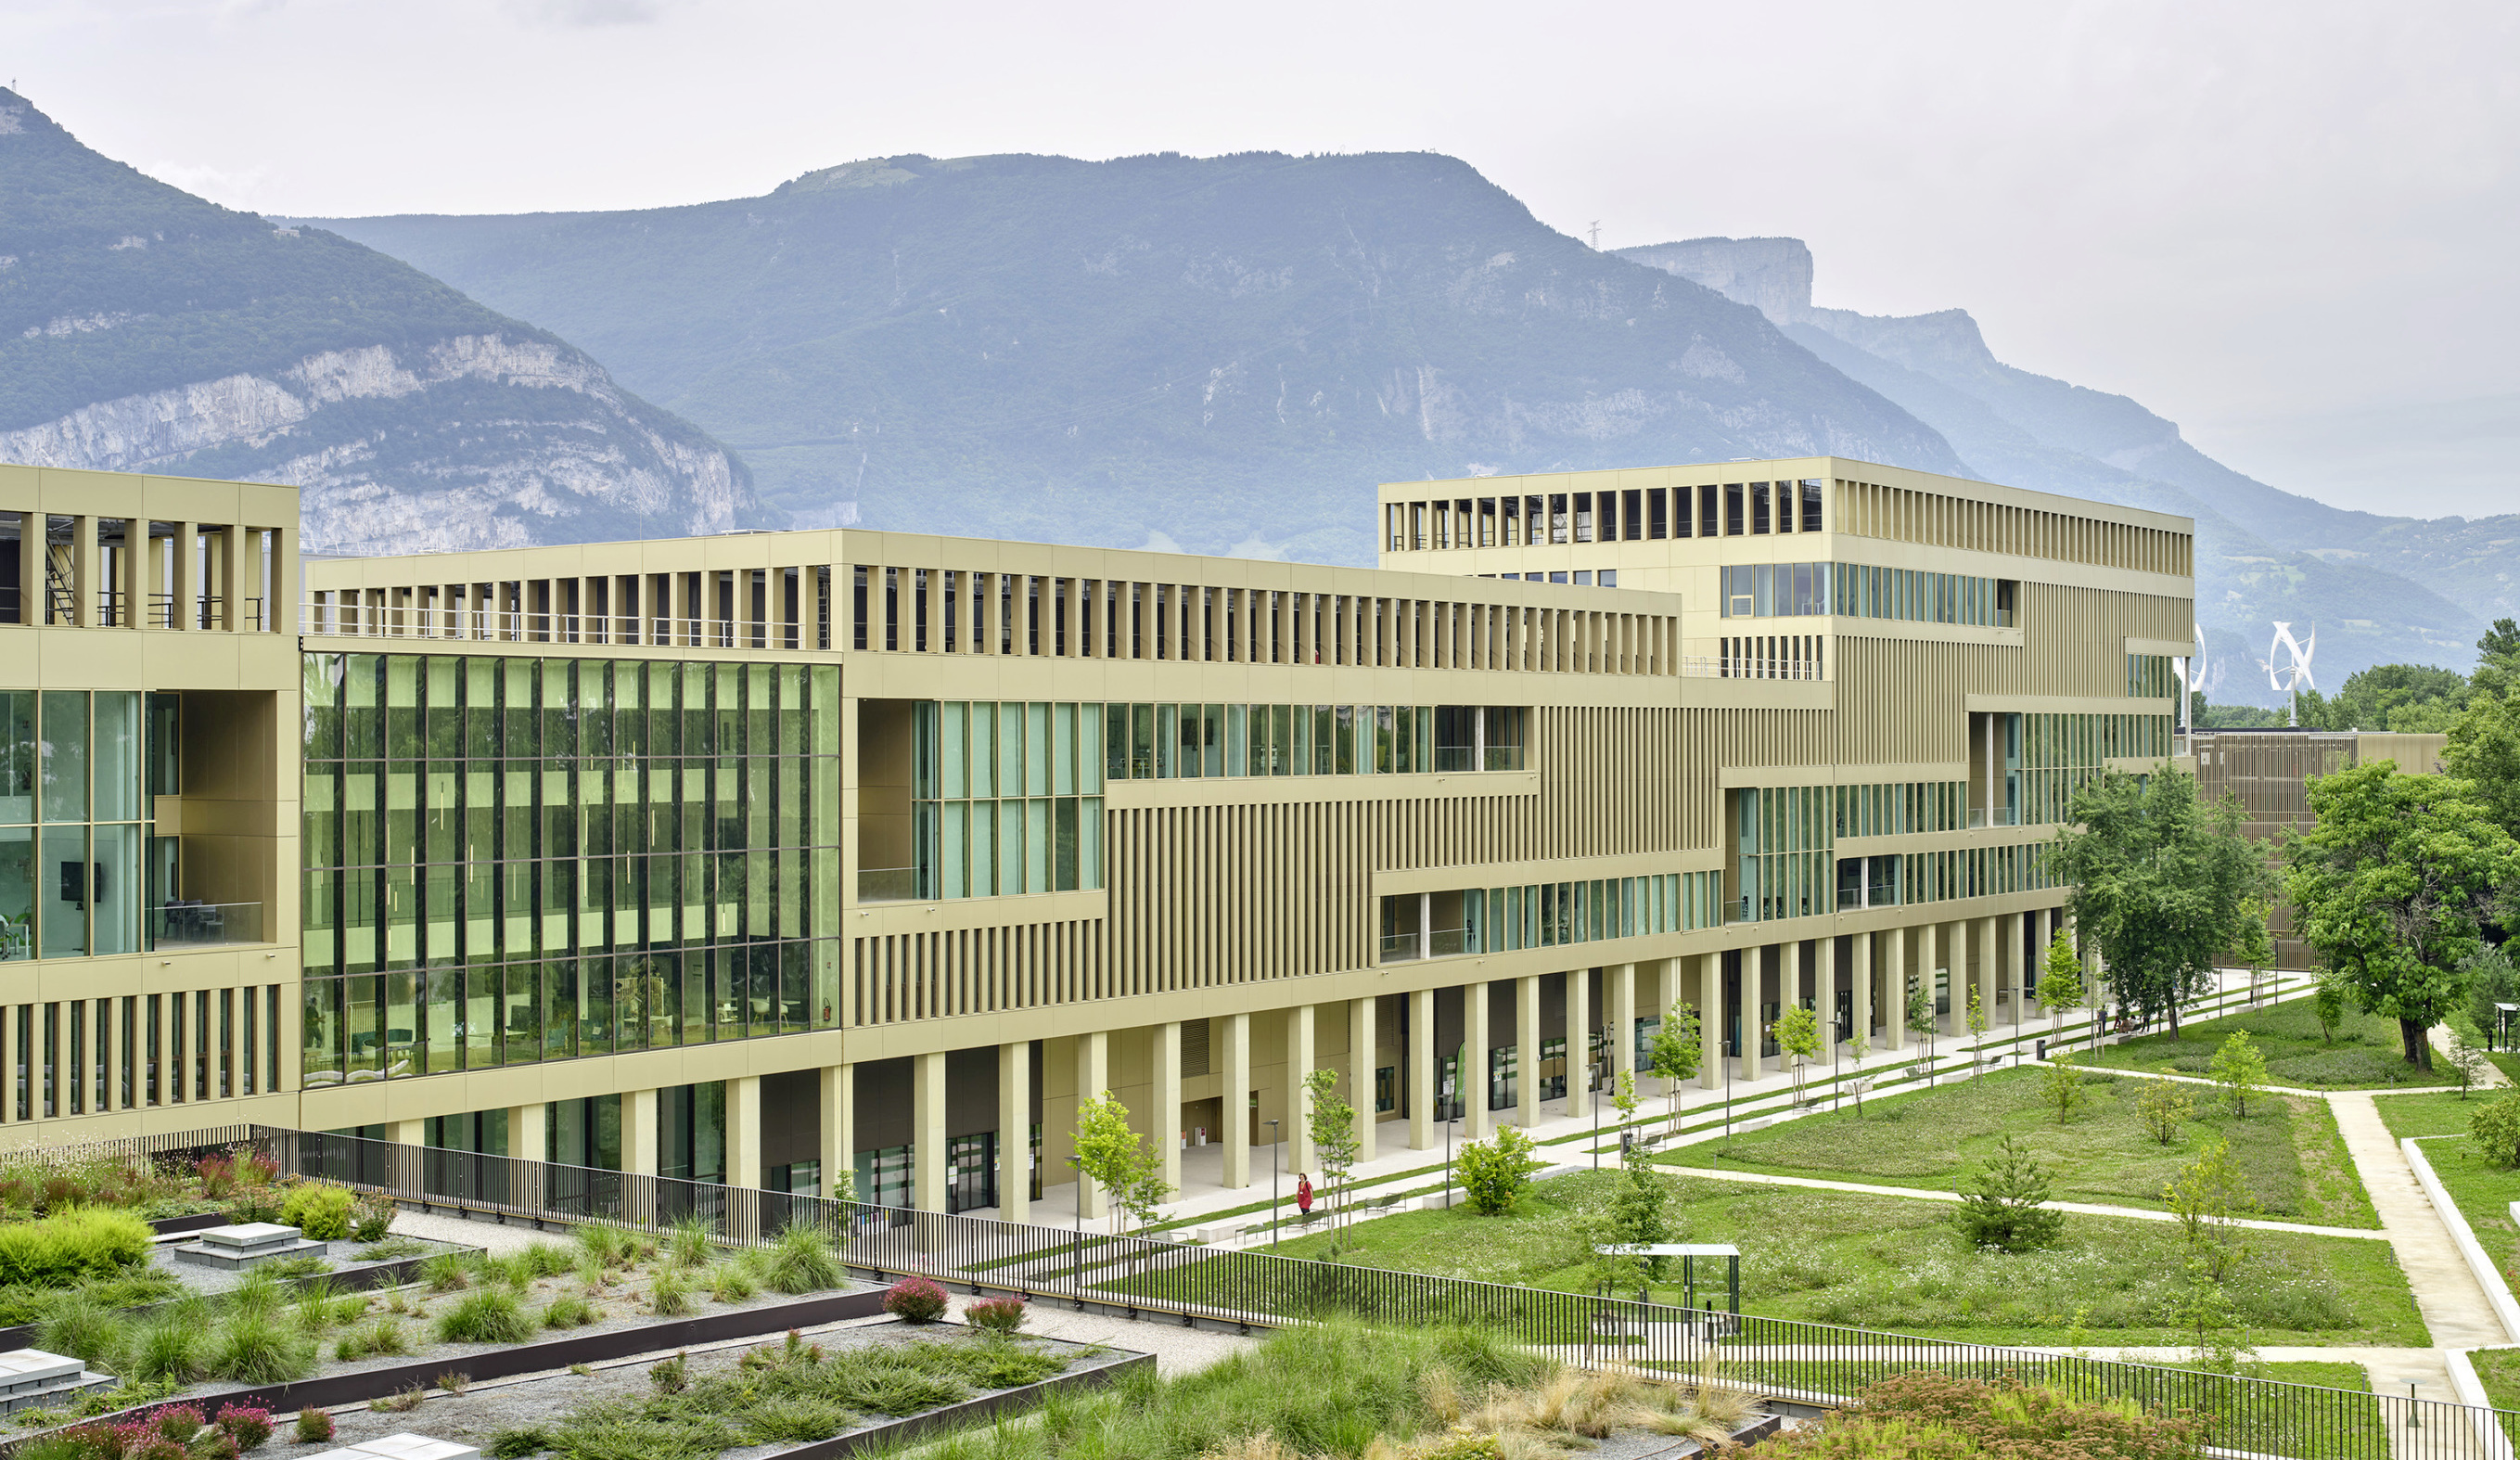 Le campus IntenCity, conçu par l'agence Groupe-6, est implanté au cœur de l'écoquartier de la Presqu'ile de Grenoble, à la confluence entre l'Isère et le Drac, au pied de la montagne et proche du futur parc naturel.